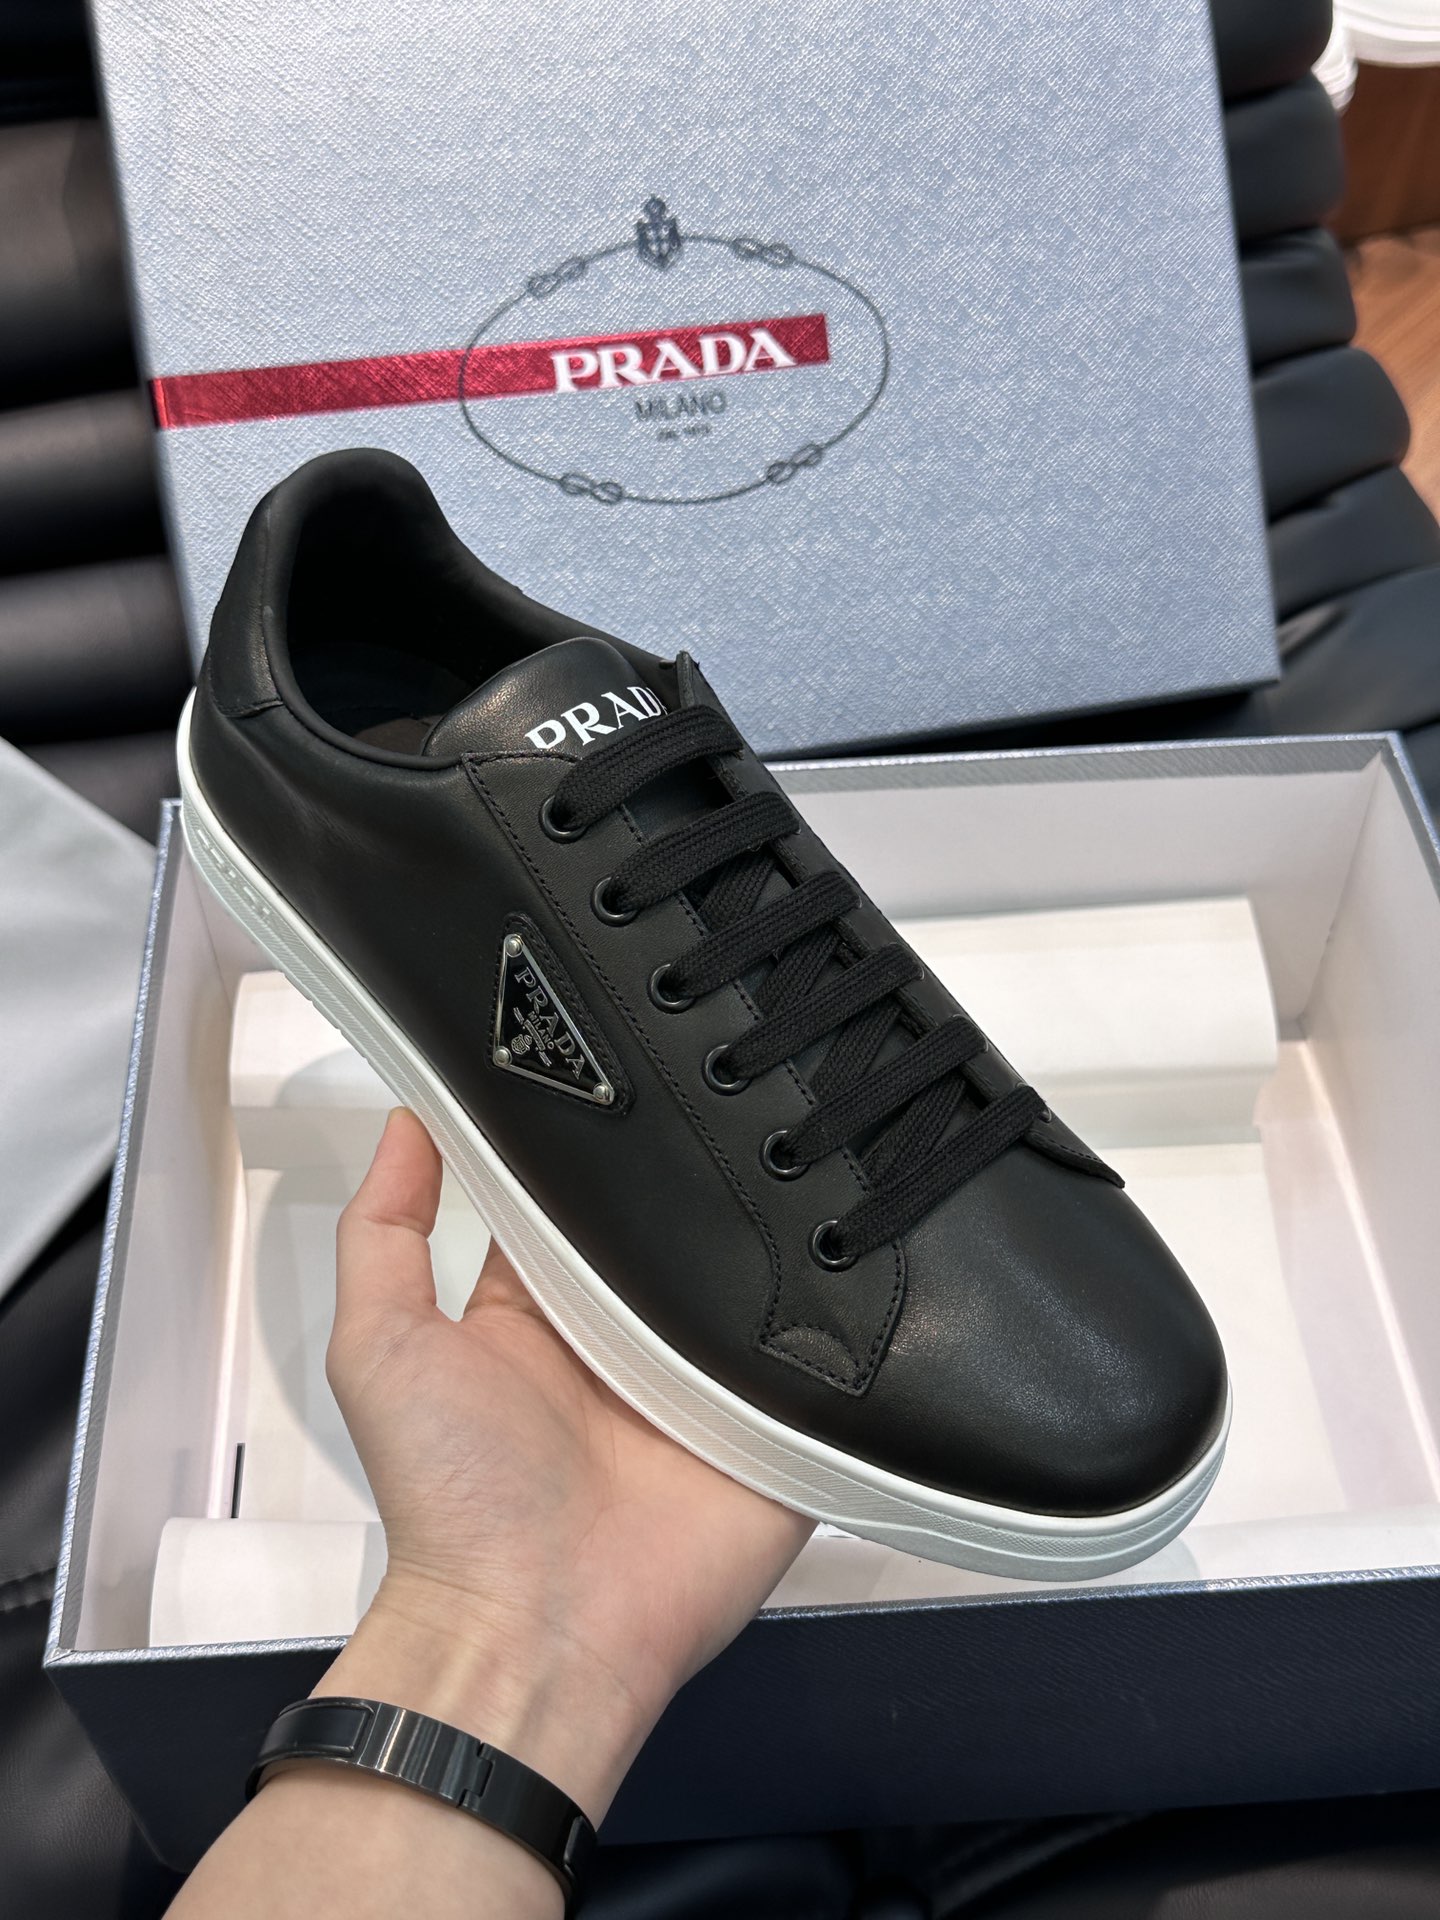 PRAD*普拉达新款高端男士休闲运动鞋这款皮革运动鞋采用小牛皮鞋面鞋身多角度诠释Prada字母品牌徽标品